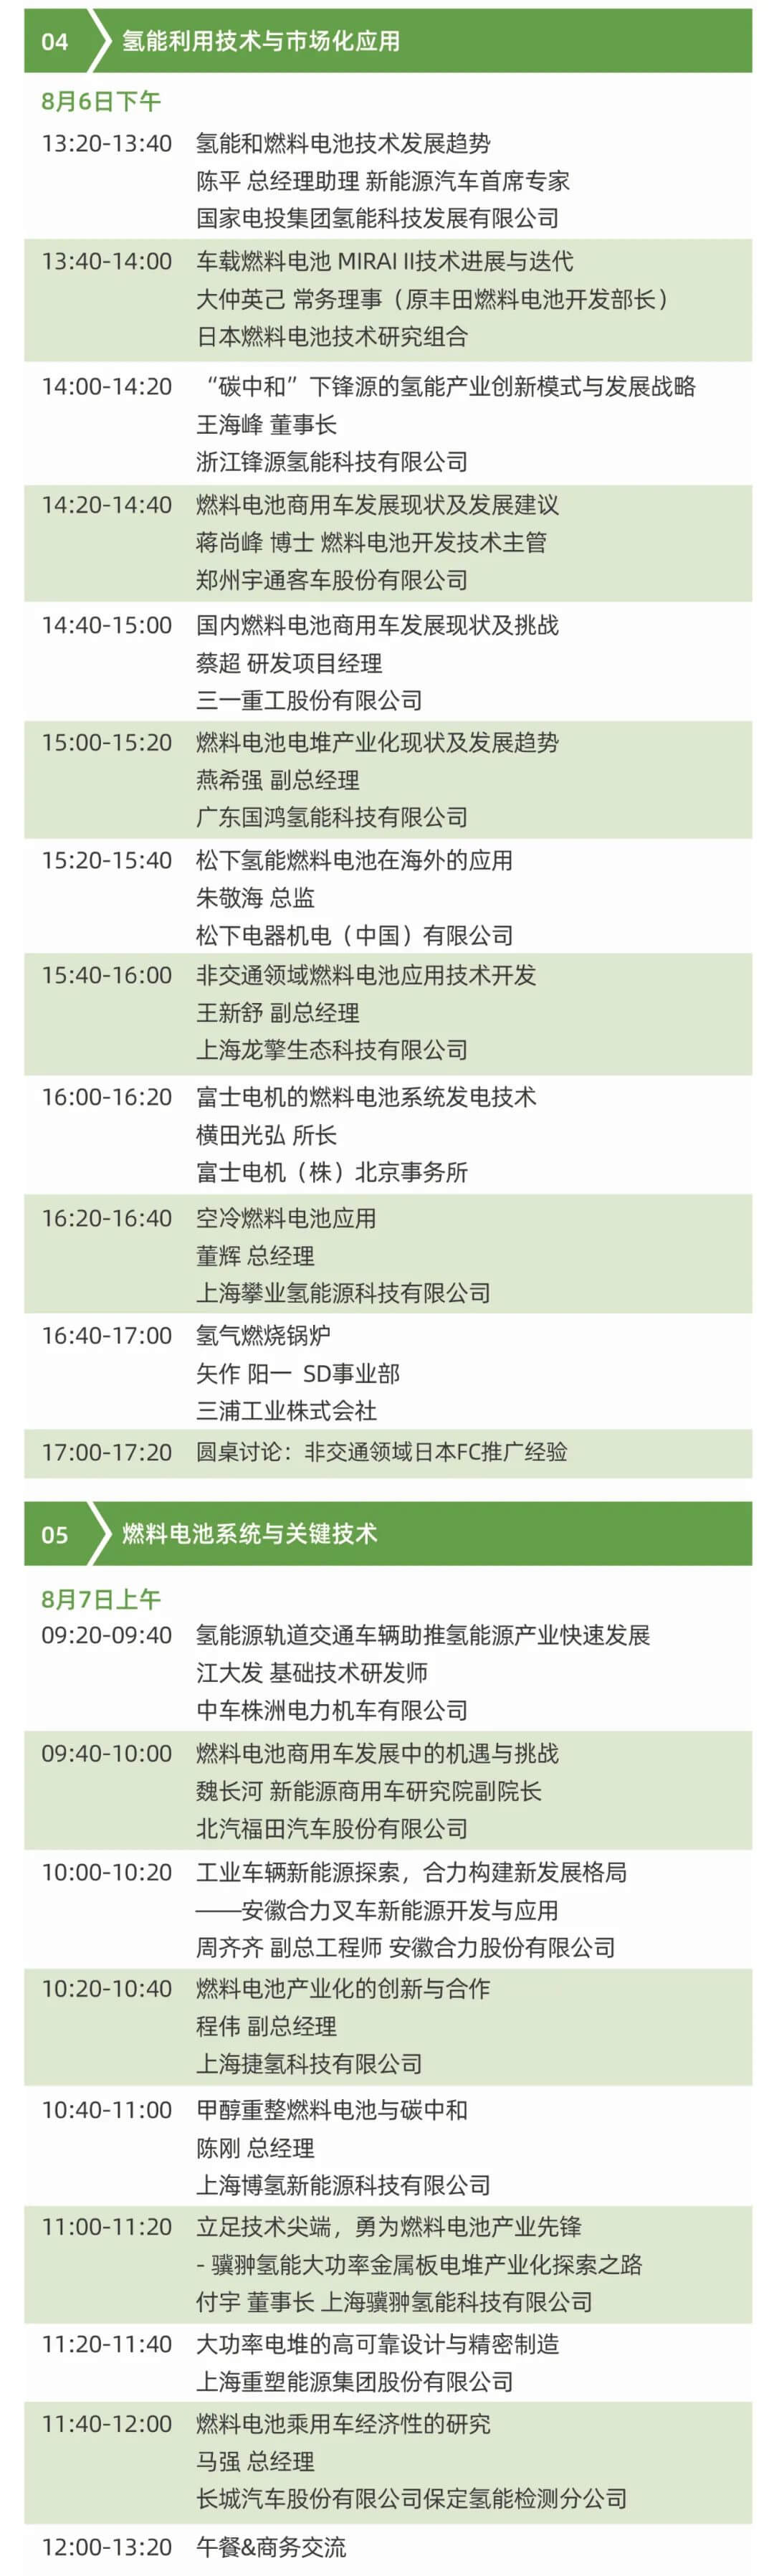 2021中日氢能技术及产业协同发展大会将于8月5-7日在上海举办！ .jpg